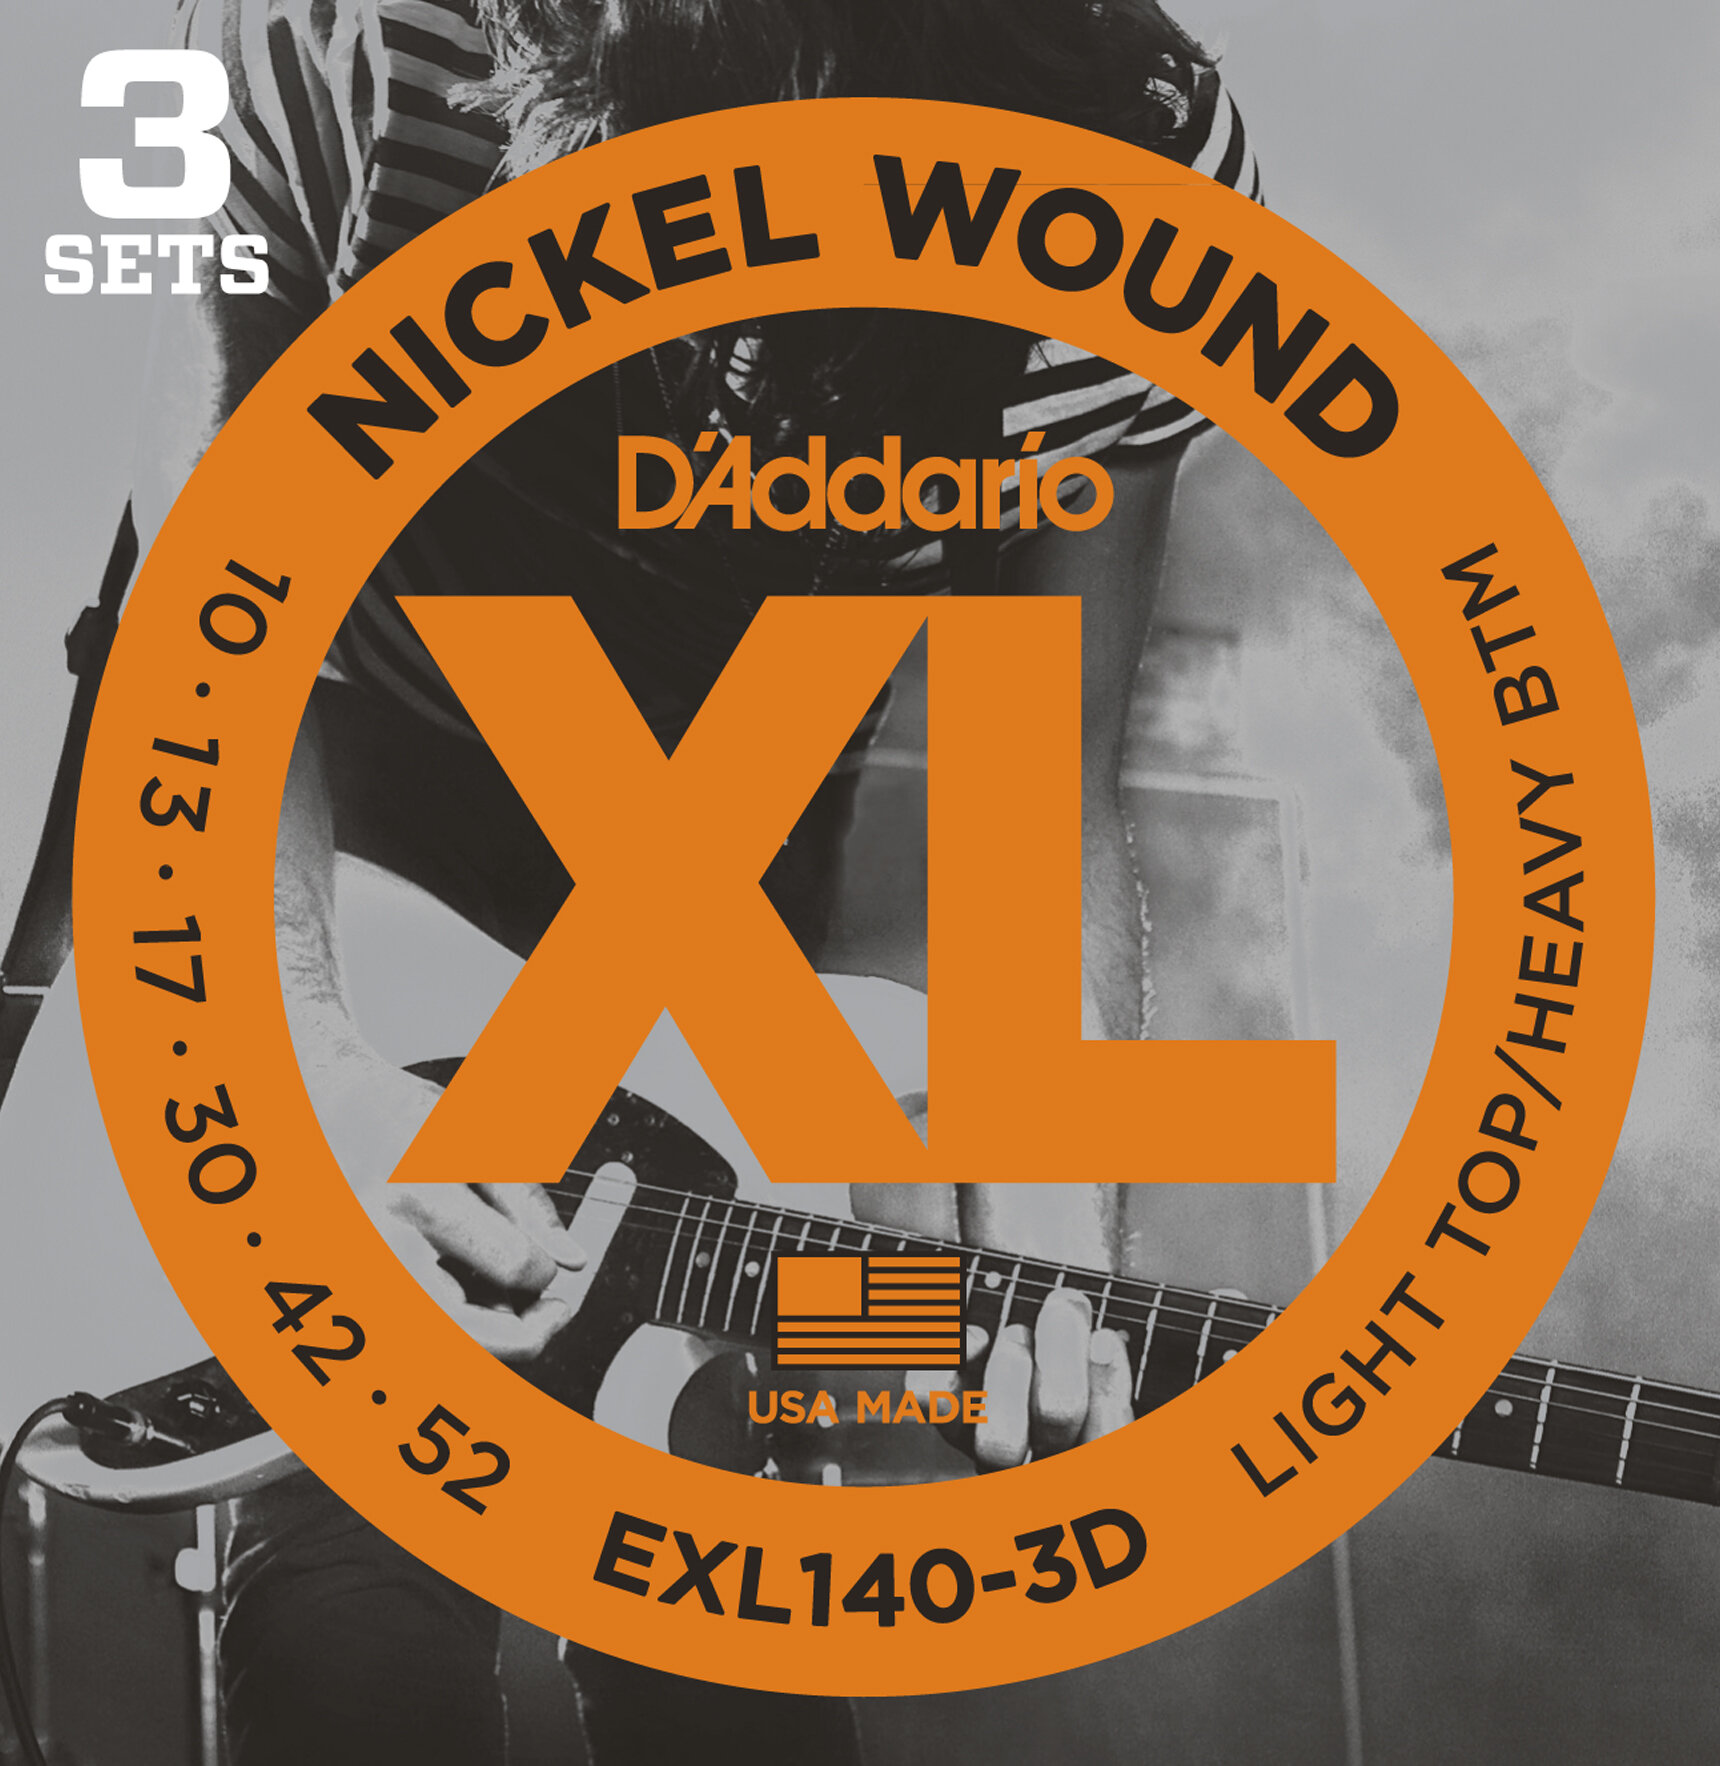 DAddario EXL140 Nickel Wound Electric Strings 3PK -  D'Addario, EXL140-3D